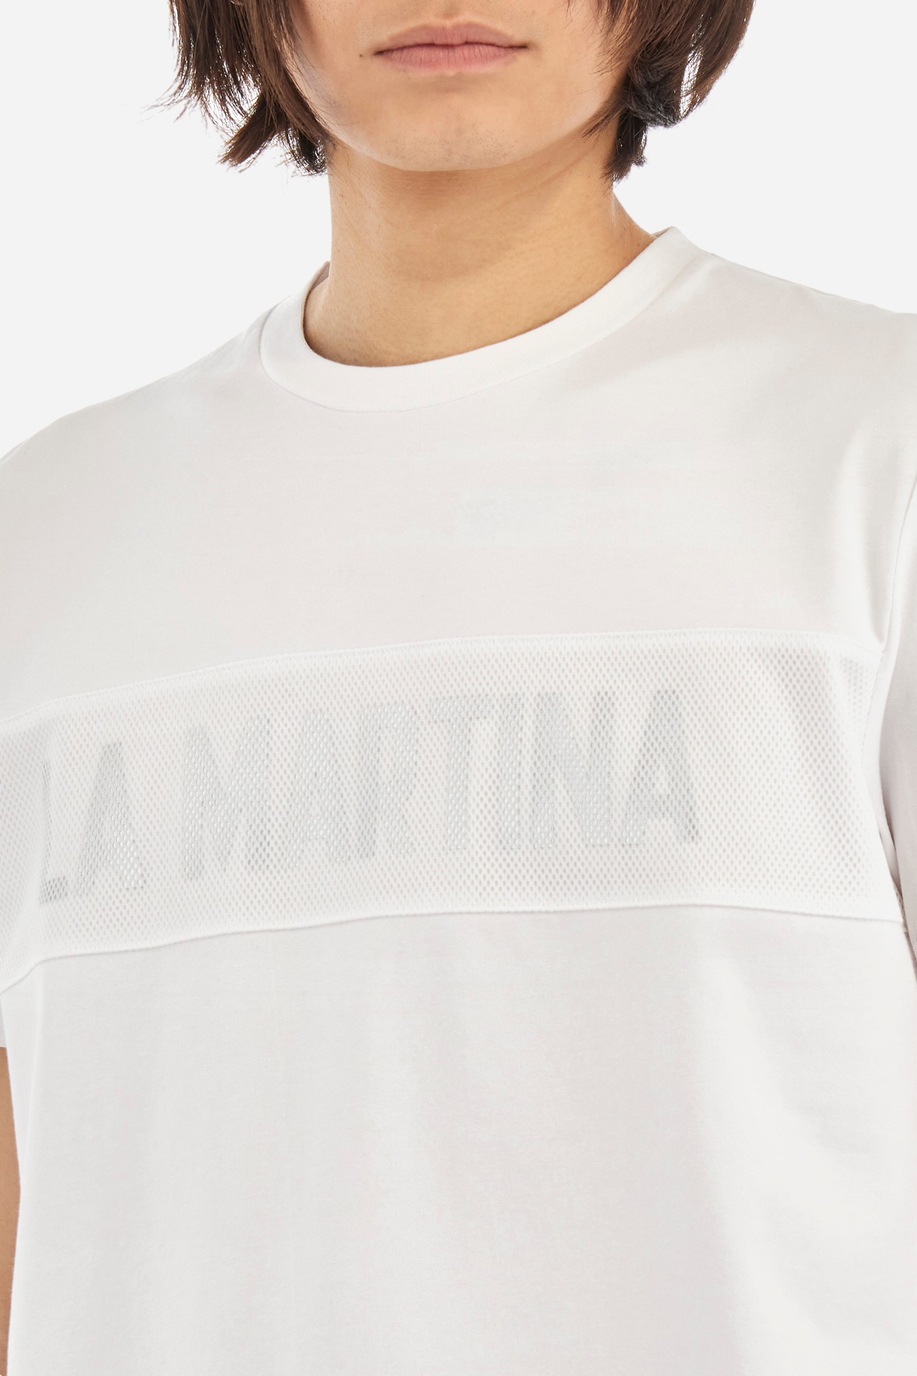 T-shirt regular fit in cotone elasticizzato - Yeshuda - Jet Set | La Martina - Official Online Shop